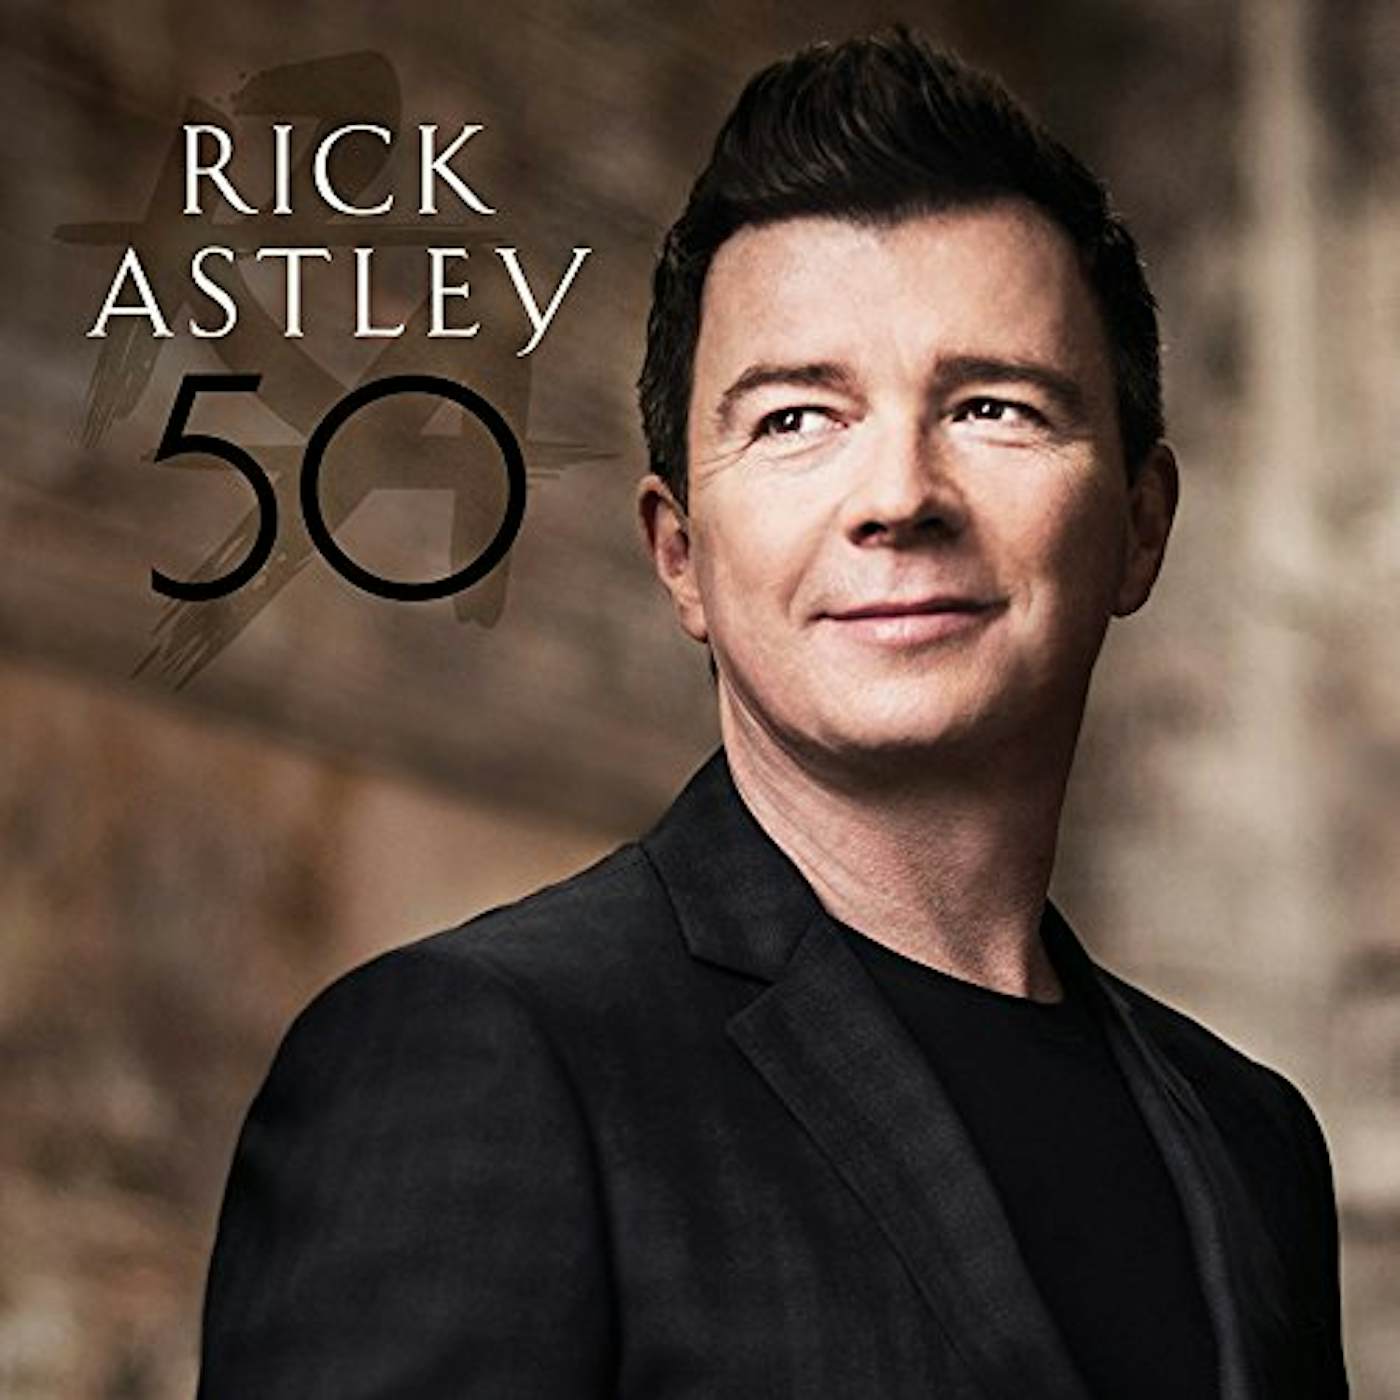 Rick Astley 50 Vinyl Record